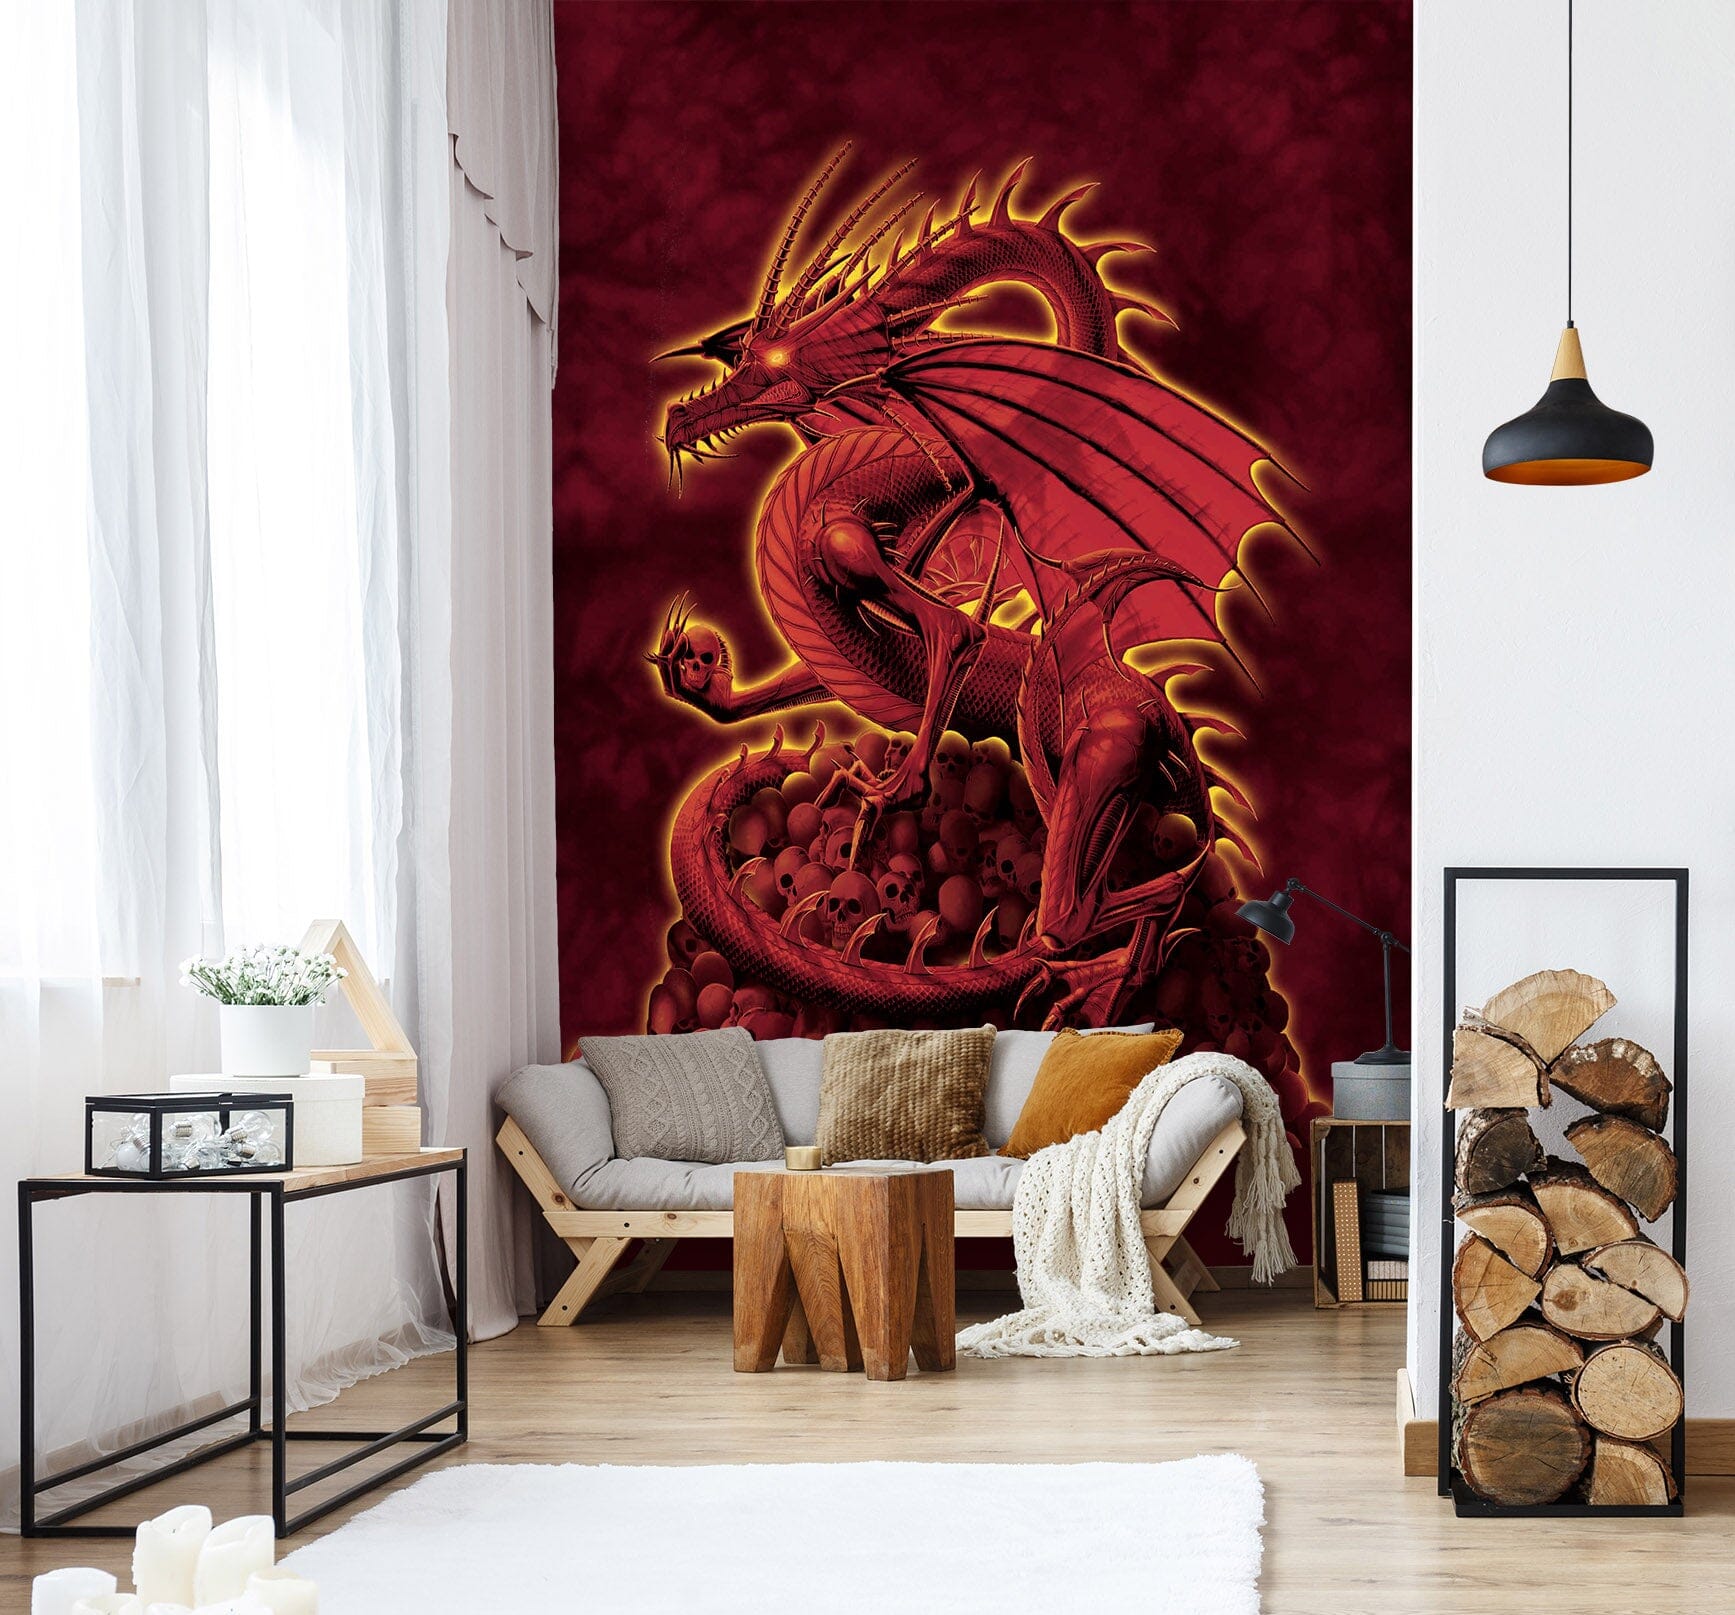 3D Red Dragon 1405 Wall Murals Exclusive Designer Vincent Wallpaper AJ Wallpaper 2 